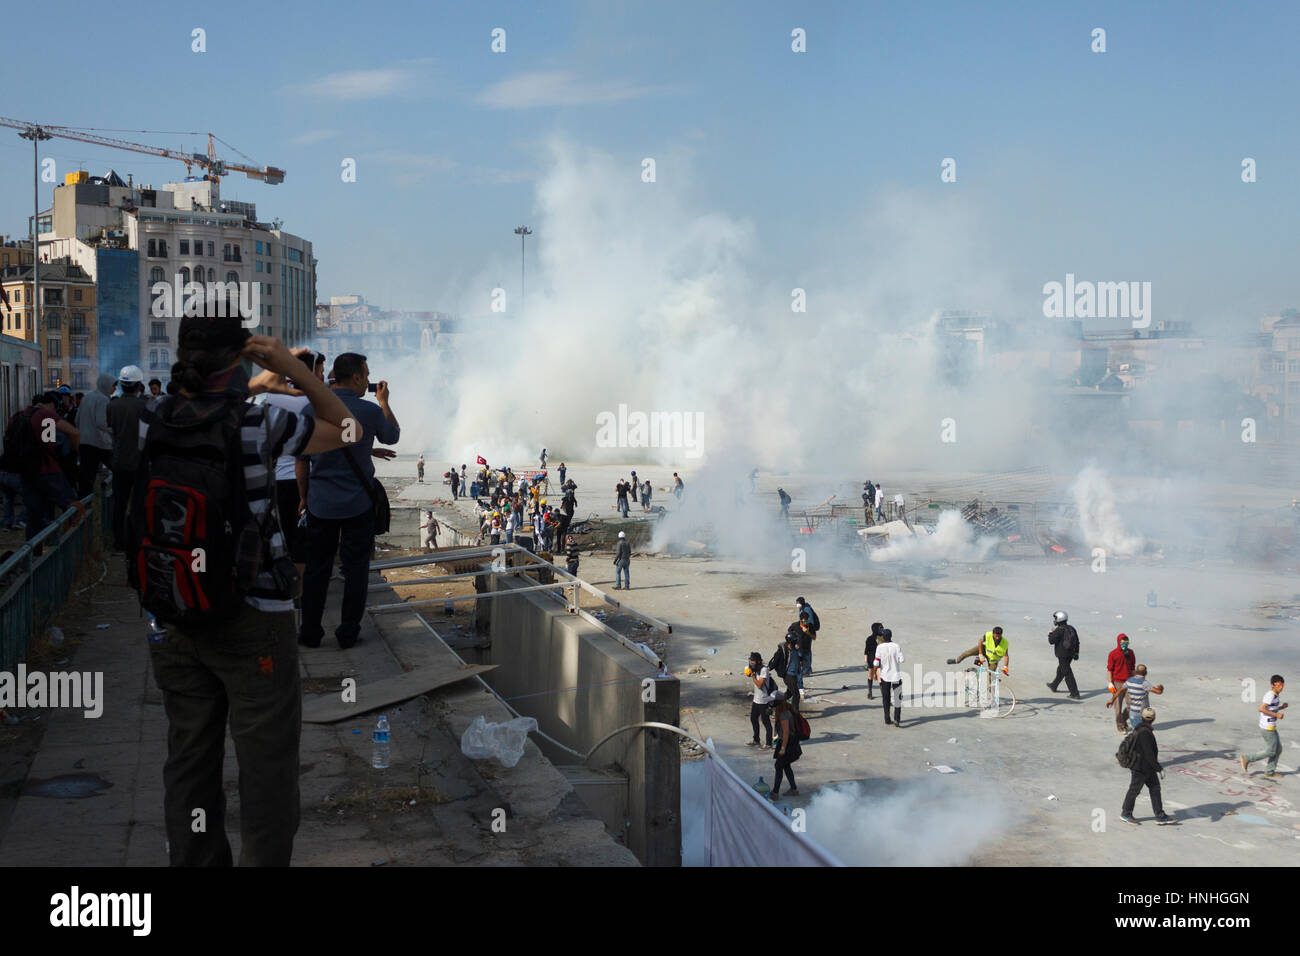 ISTANBUL - 10 Giugno 2013 : Le persone sono a Taksim Square per protestare contro la Taksim Gezi Park demolizione ad Istanbul in Turchia. La polizia è ancora una volta in Taksim con bombole di gas. Foto Stock